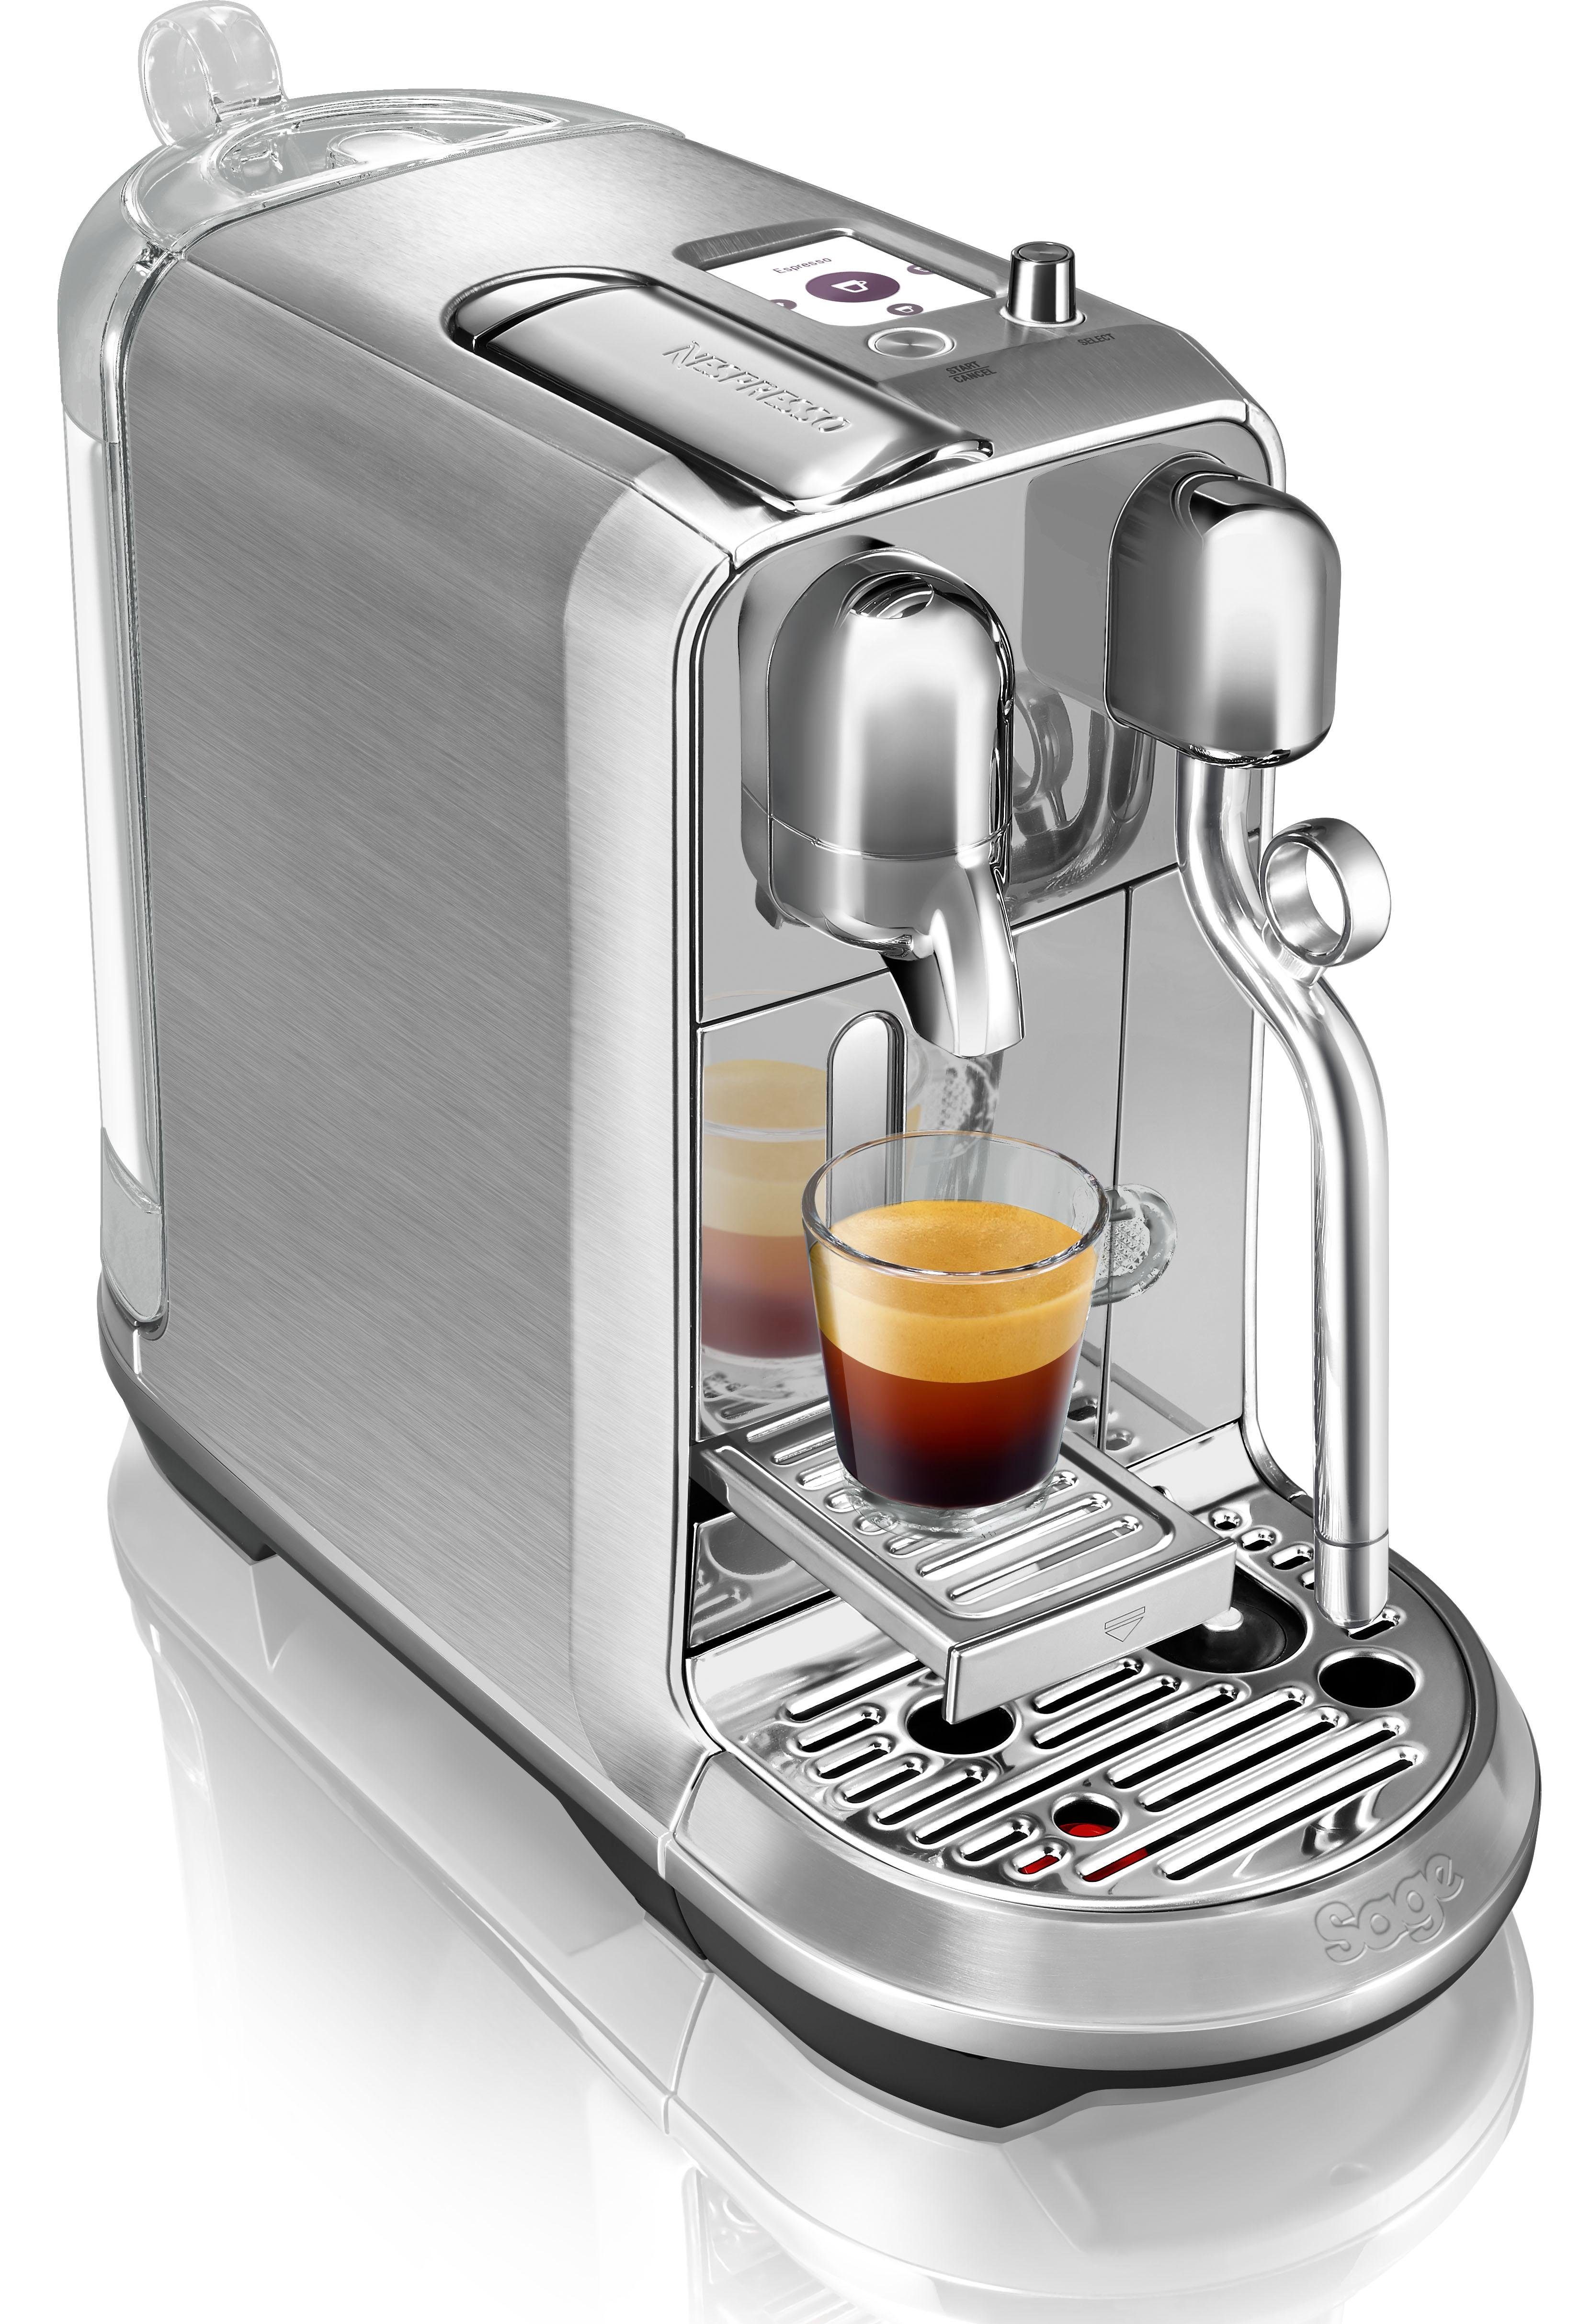 Nespresso Kapselmaschine inkl. 14 SNE800 Creatista mit Willkommenspaket Kapseln Edelstahl-Milchkanne, mit Plus